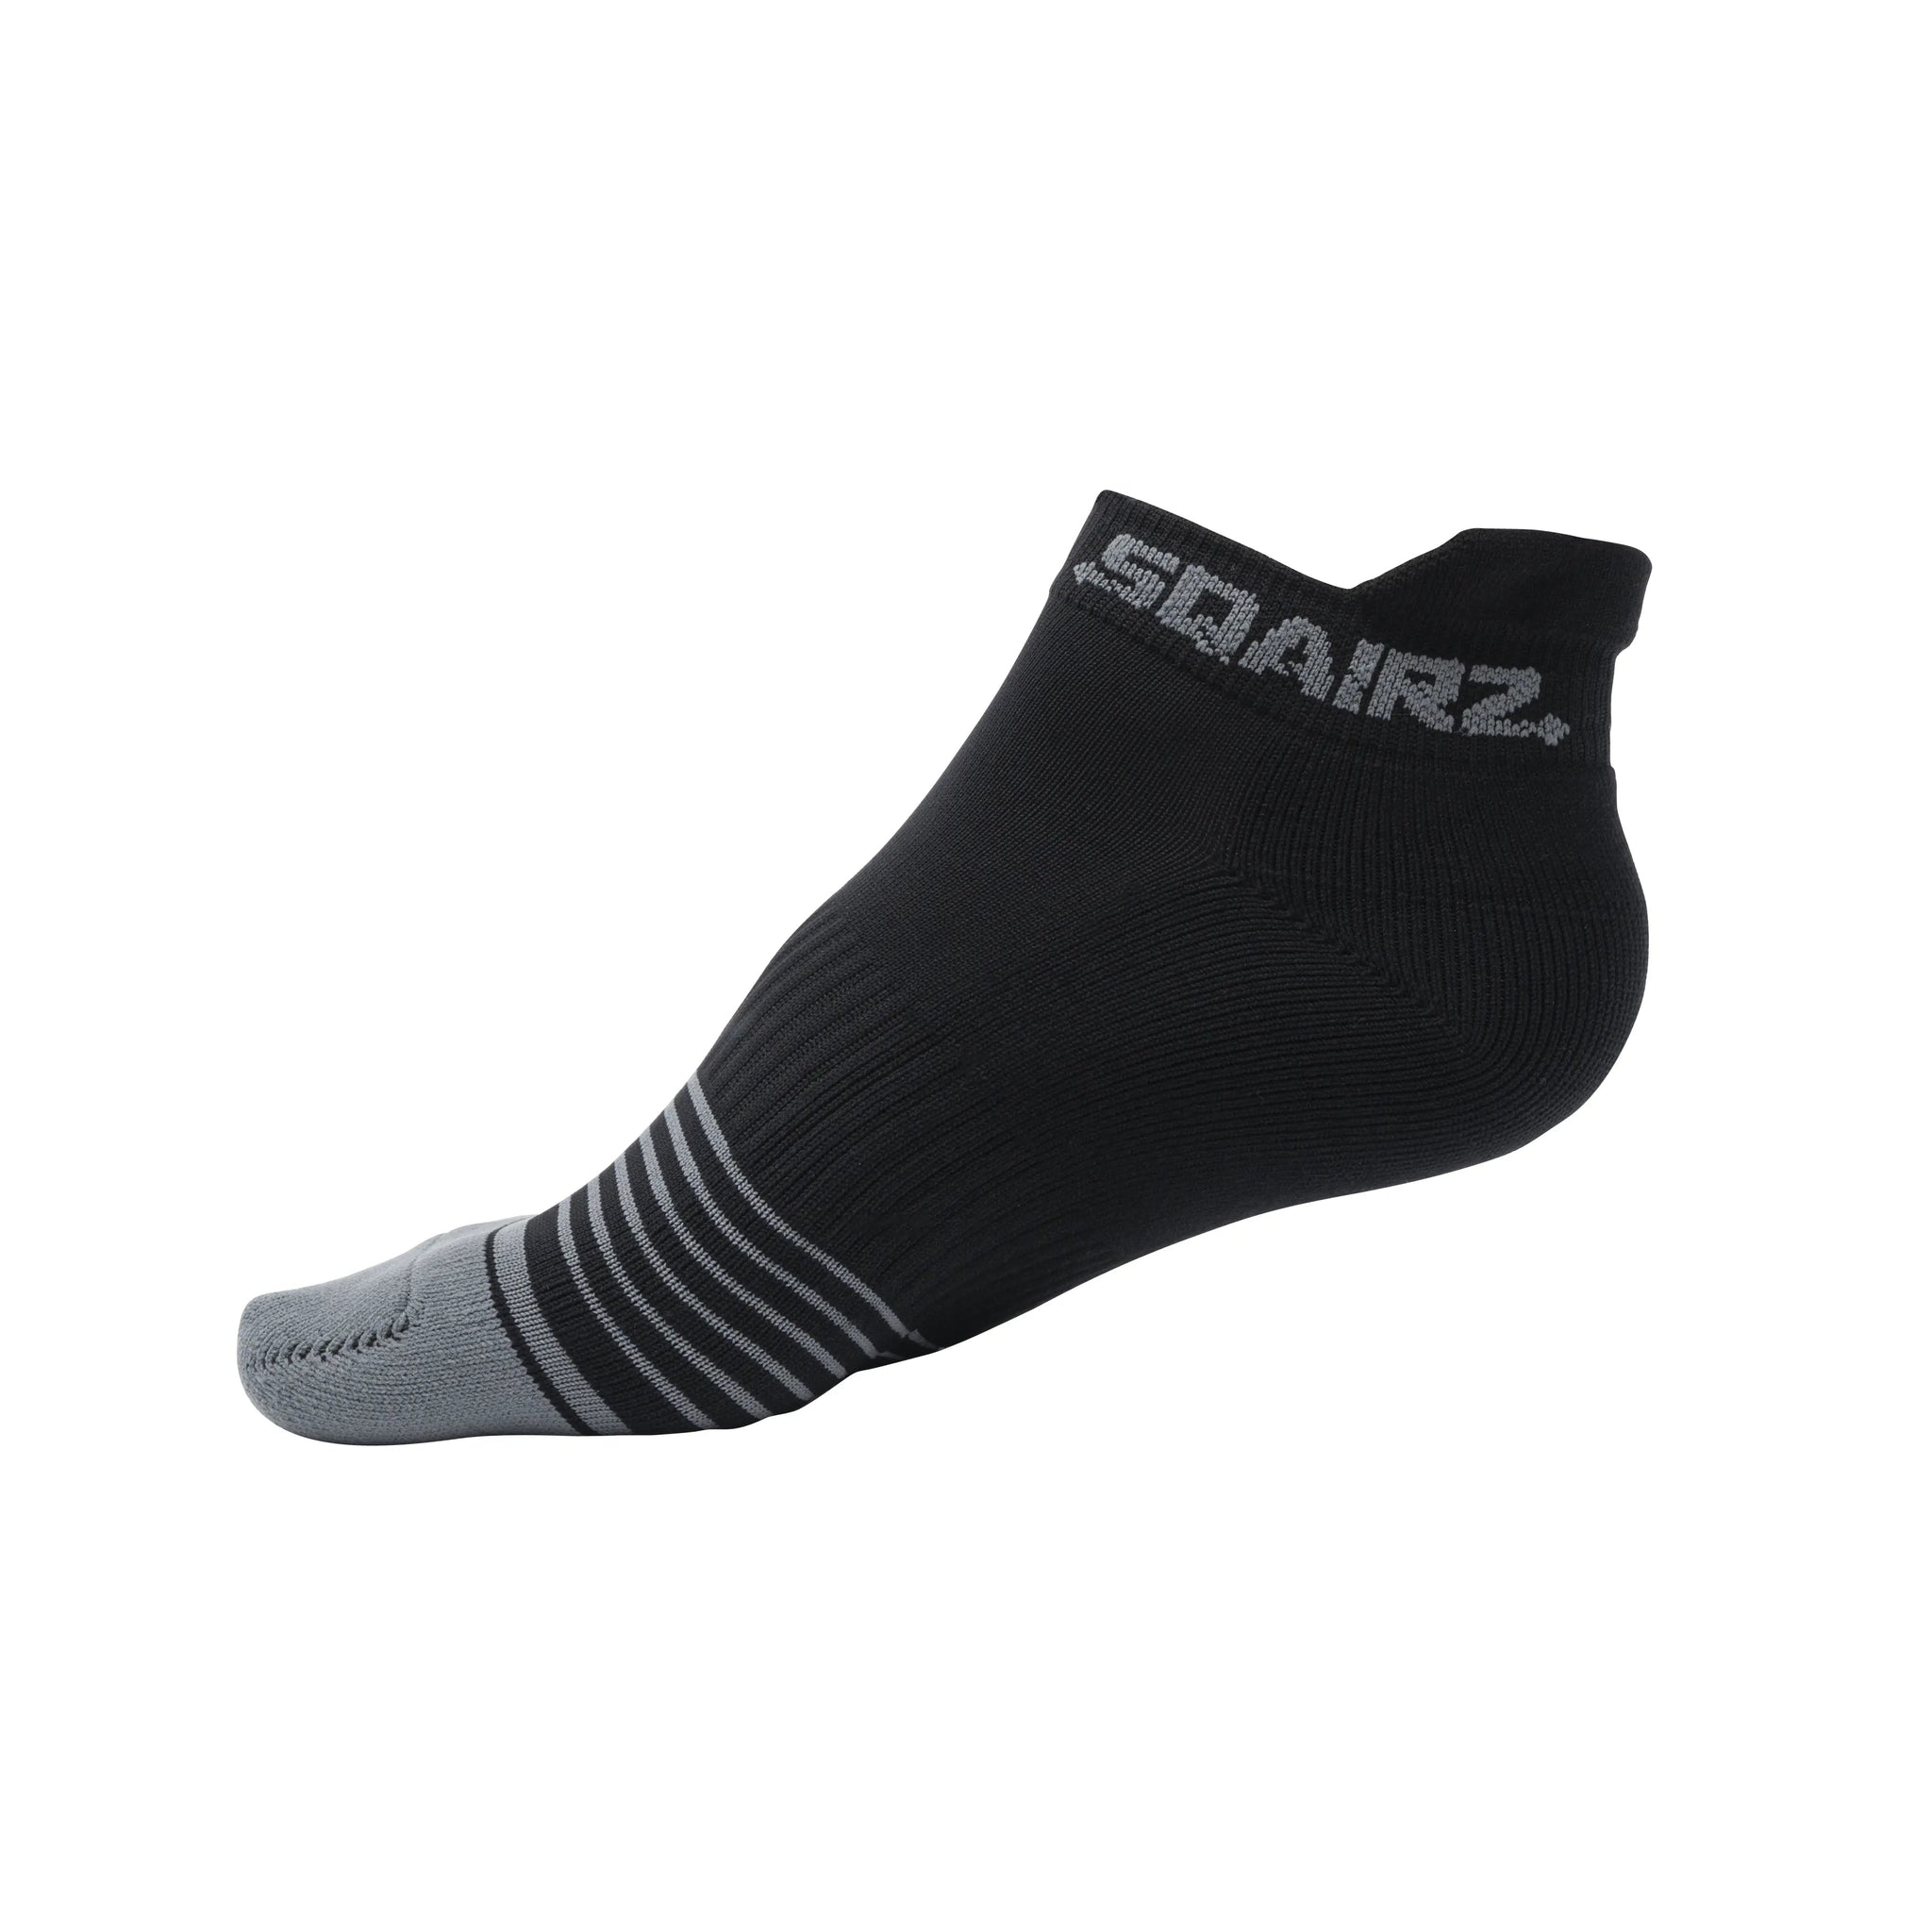 SQAIRZ-Women’s Cushioned Golf Socks (3X Pack)-One size-